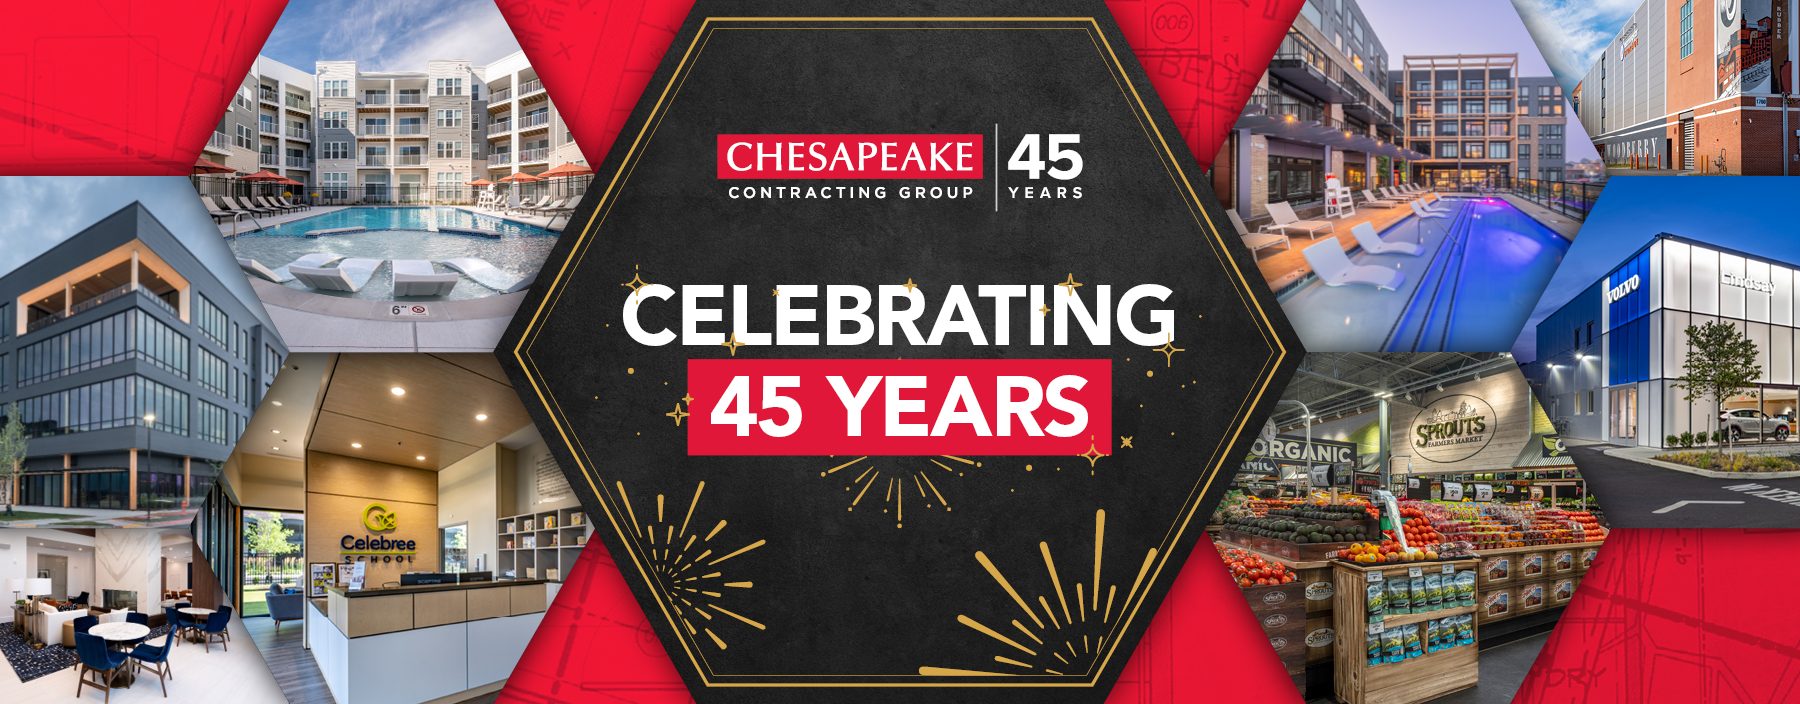 Chesapeake Celebrates 45 Years